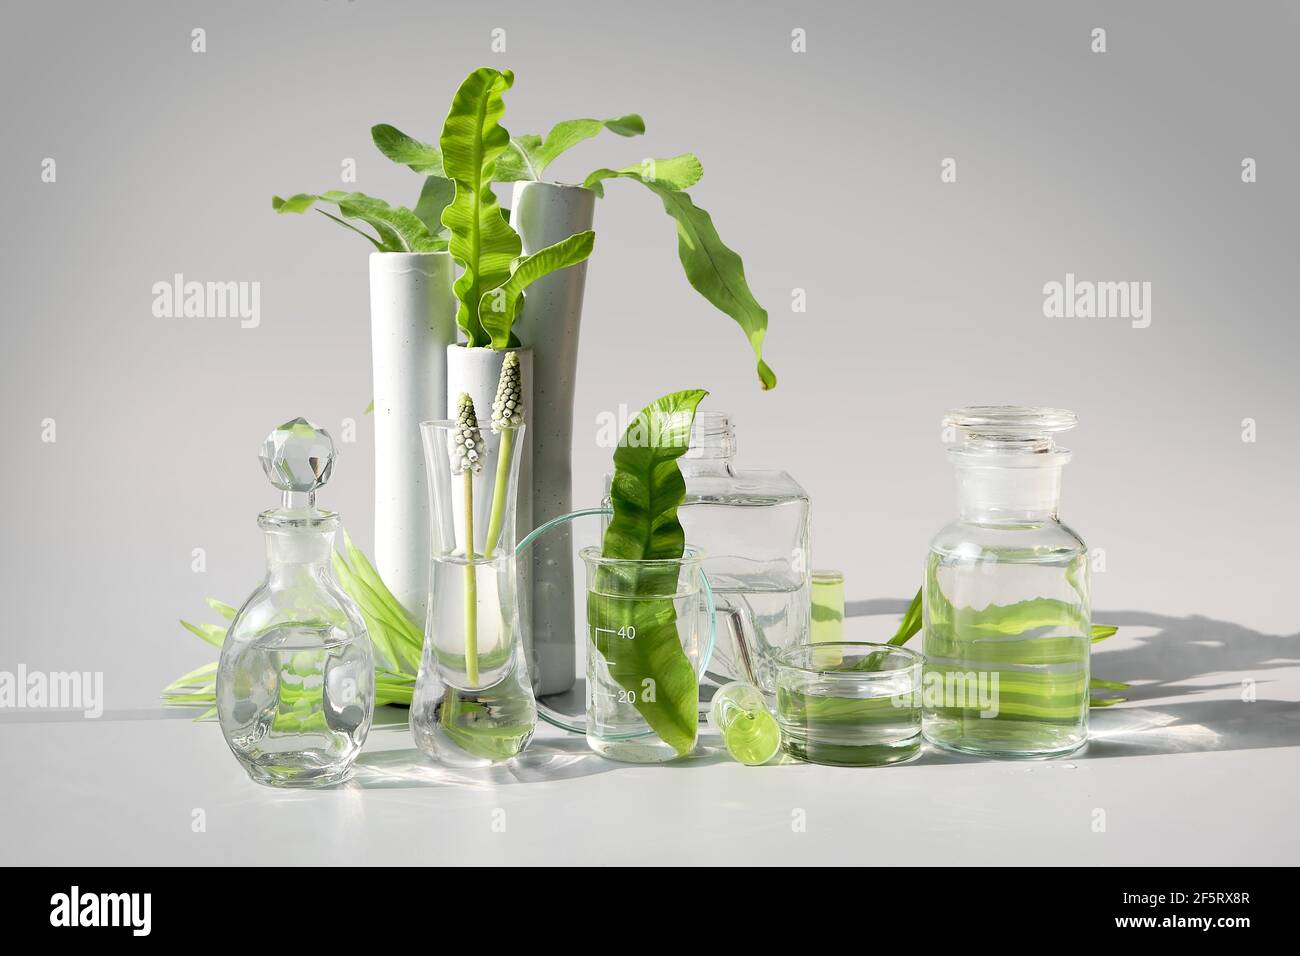 Natürliches grünes Labor. Abstraktes Blumenarrangement auf hellviolettem Hintergrund. Exotische grüne Blätter in transparenten Glasflaschen, Fläschchen, Petrischalen Stockfoto